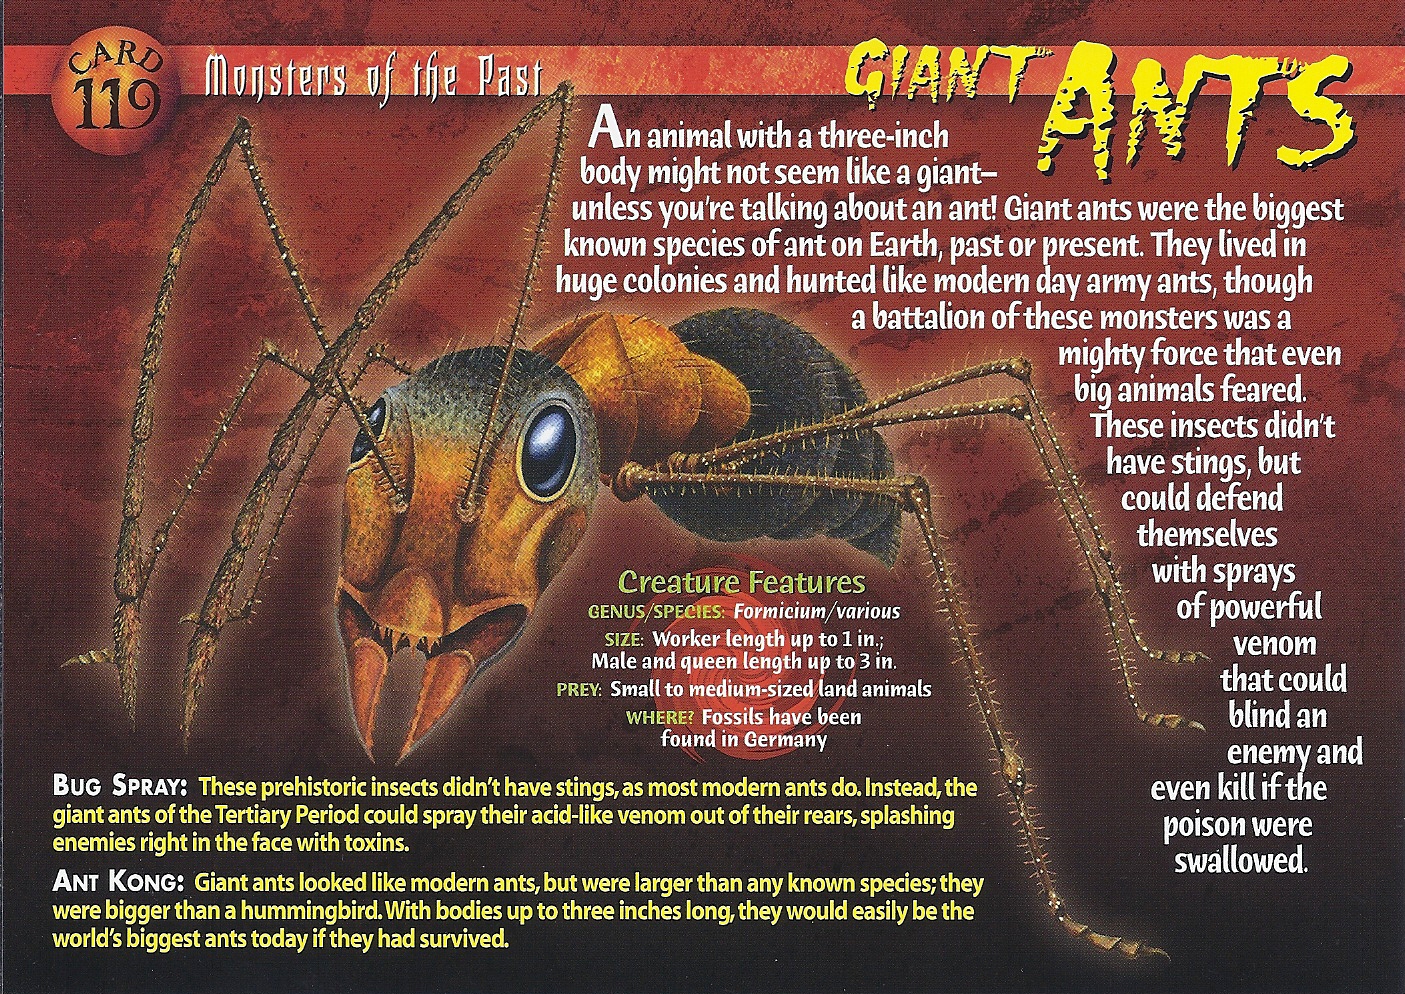 Giant Ants : r/Cryptozoology